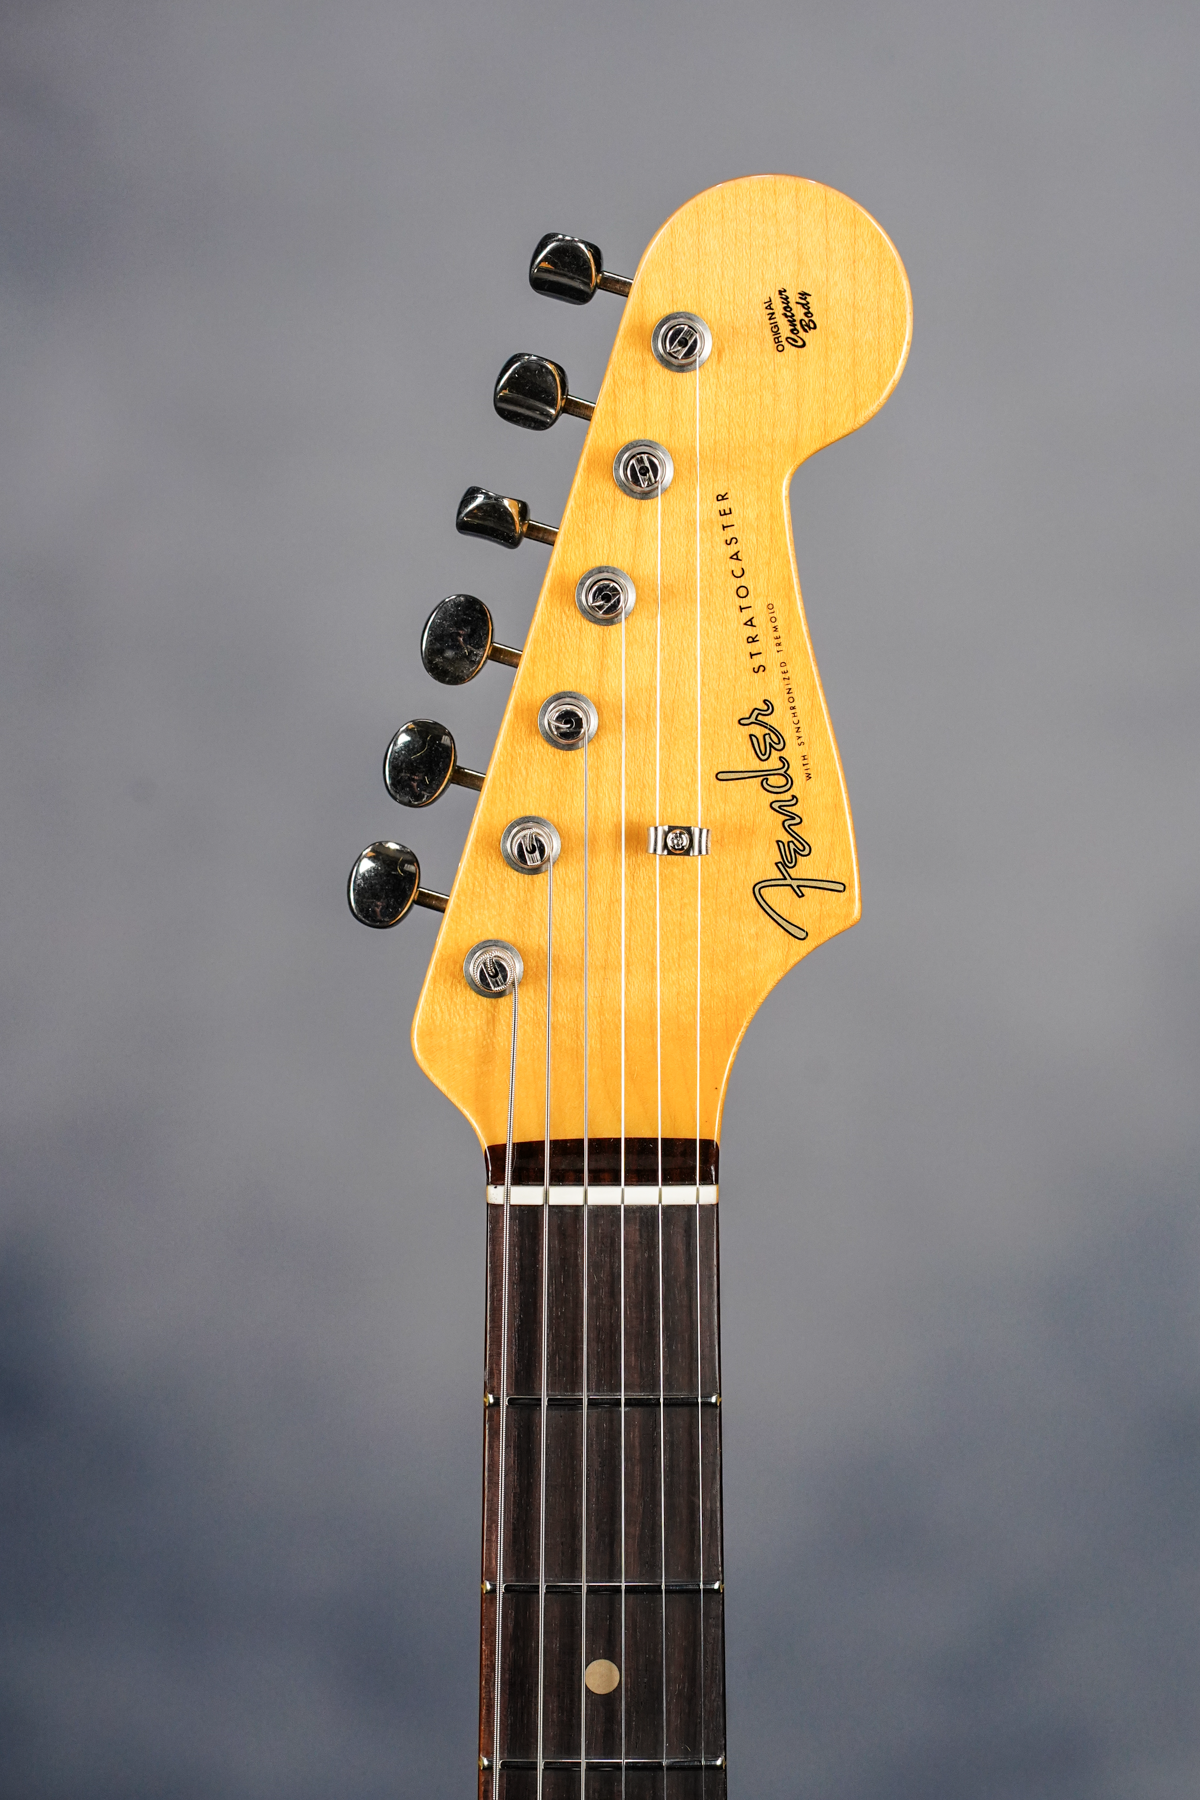 Vintage Custom 1959 Stratocaster NOS, Rosewood Fingerboard, Chocolate 3-Color Sunburst